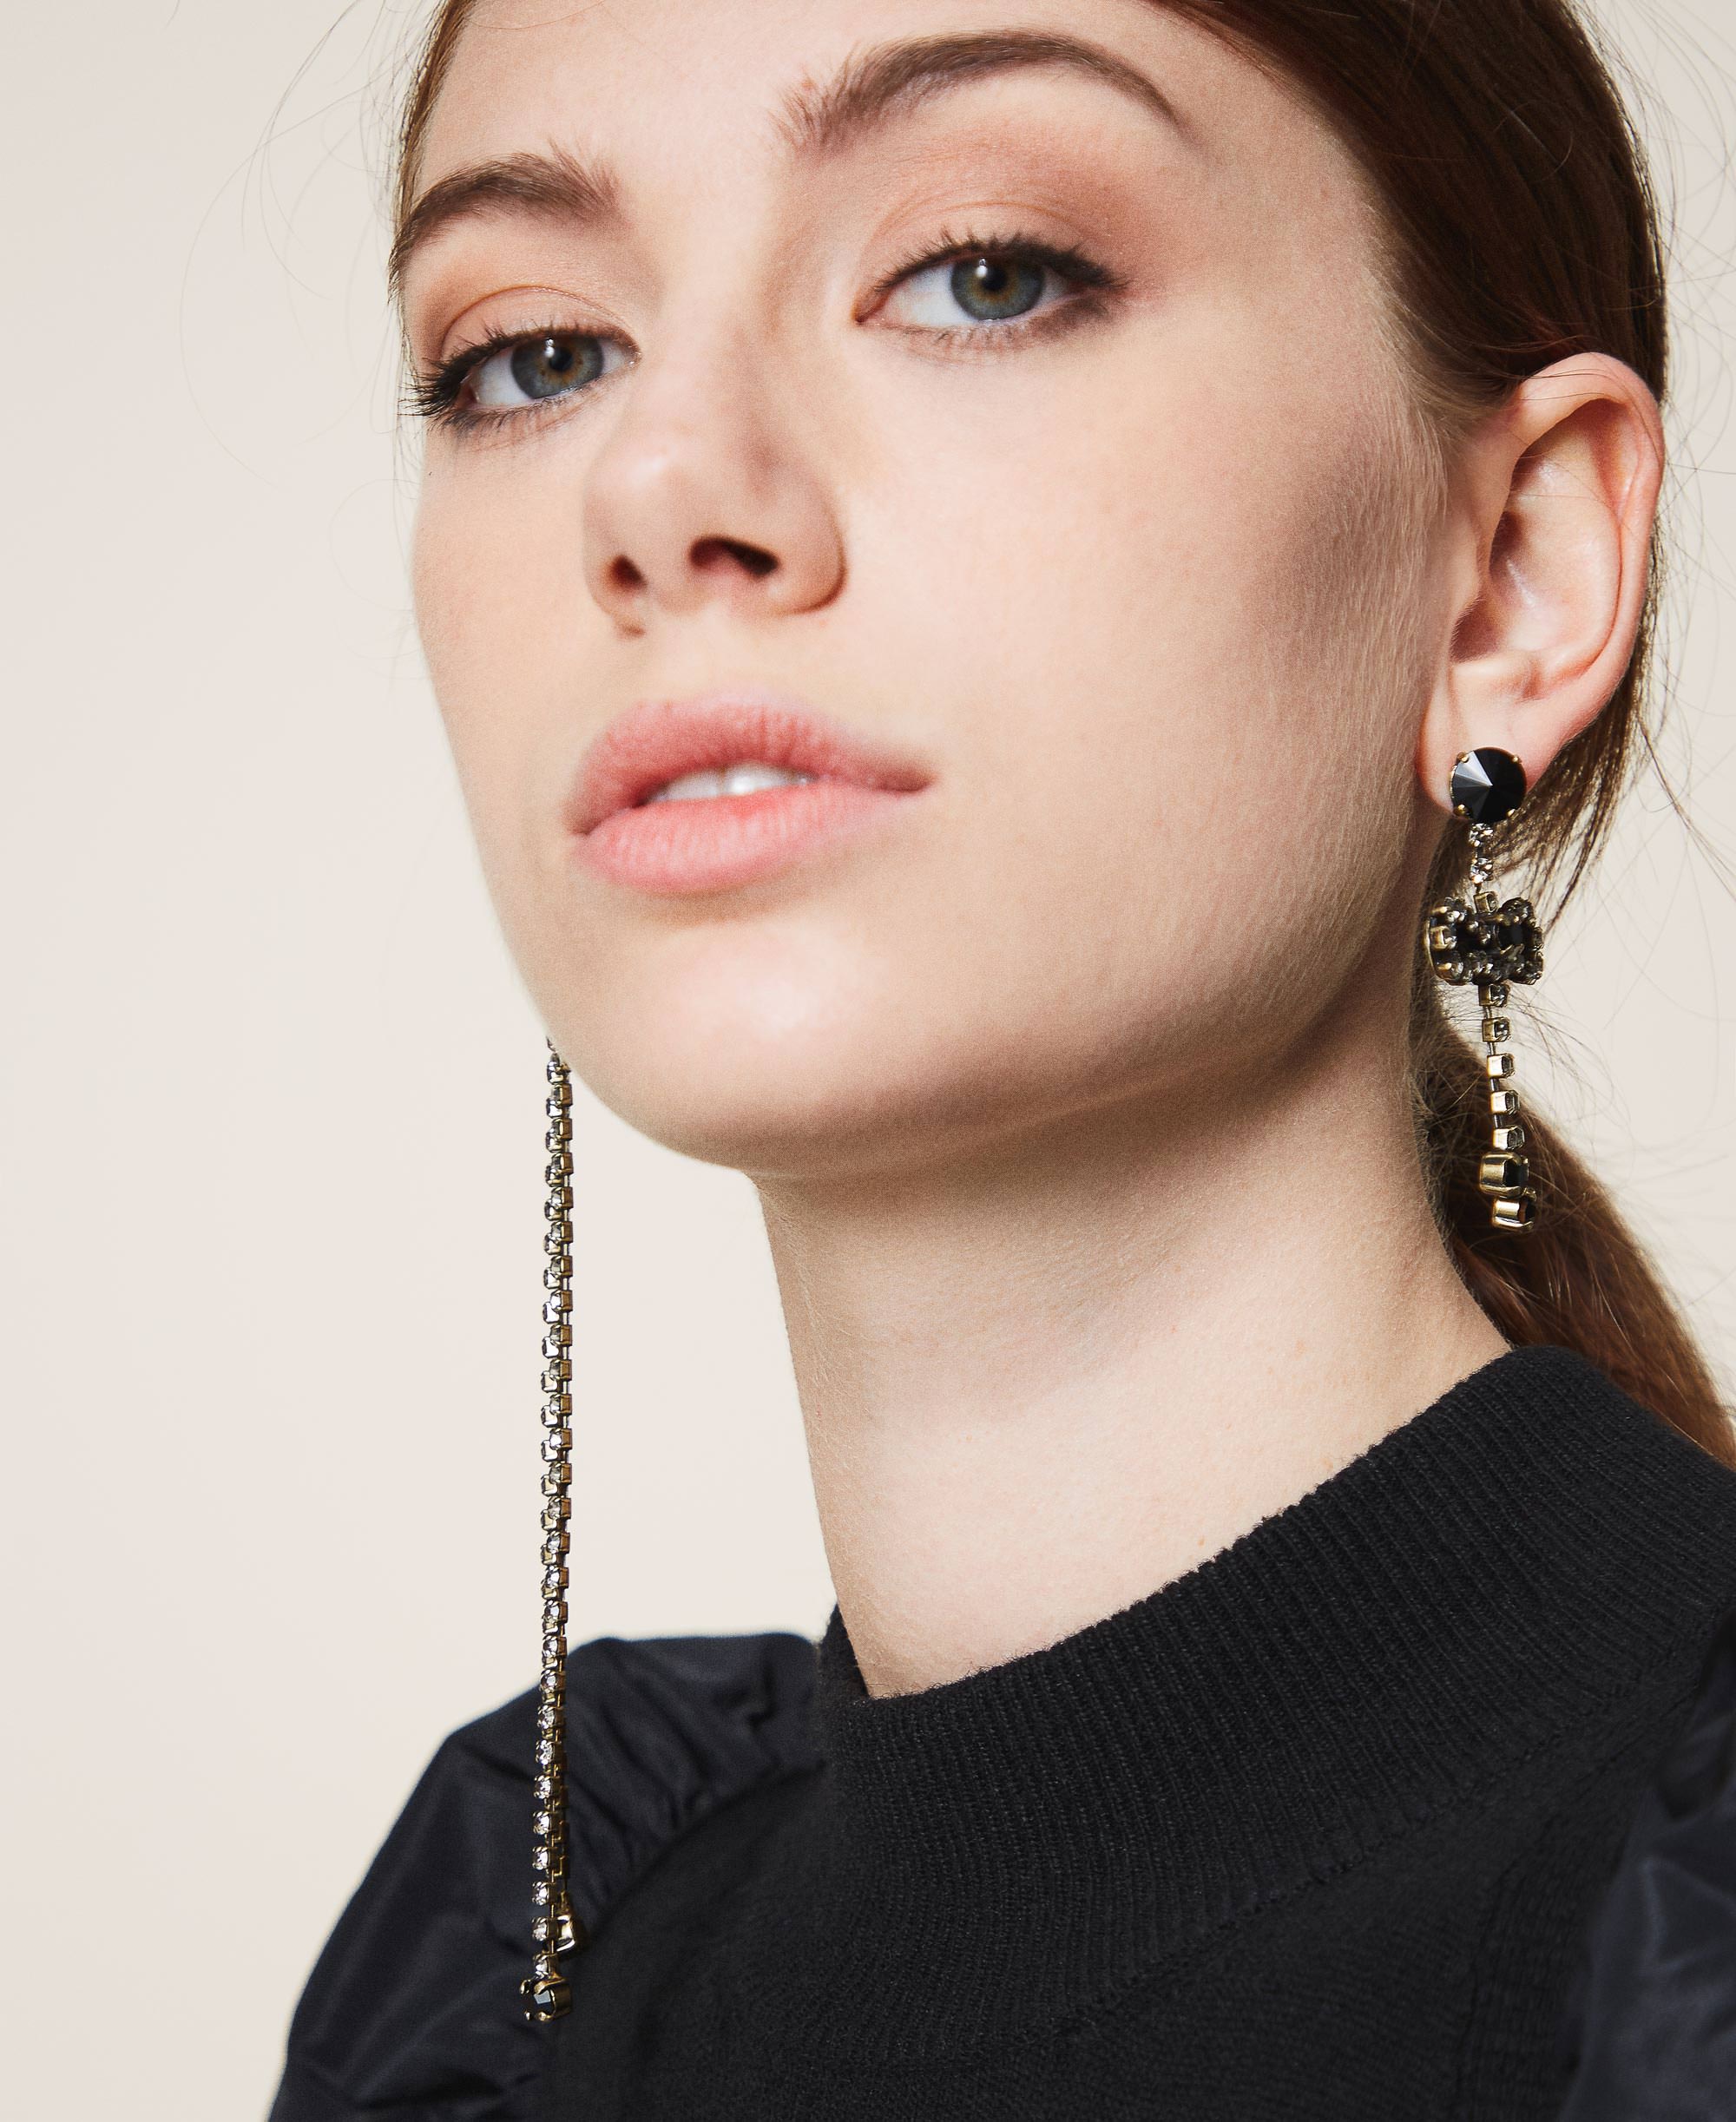 Asymmetric earrings